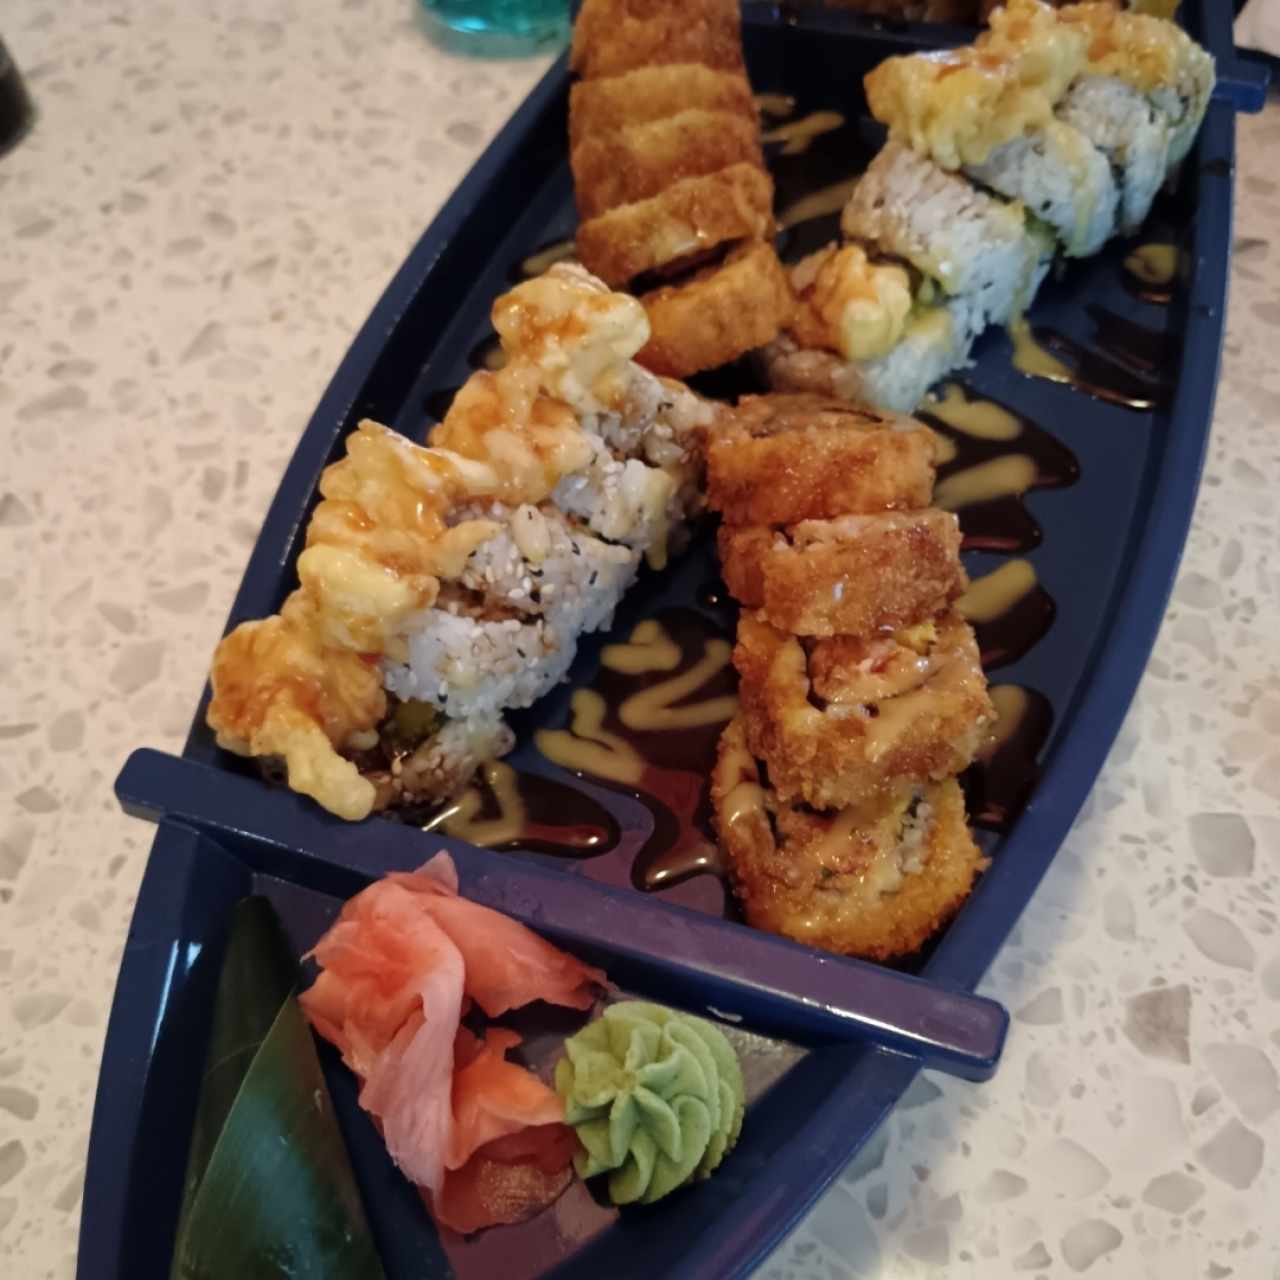 Sushi mixto - Canalero, Toriniko y Eby Rock